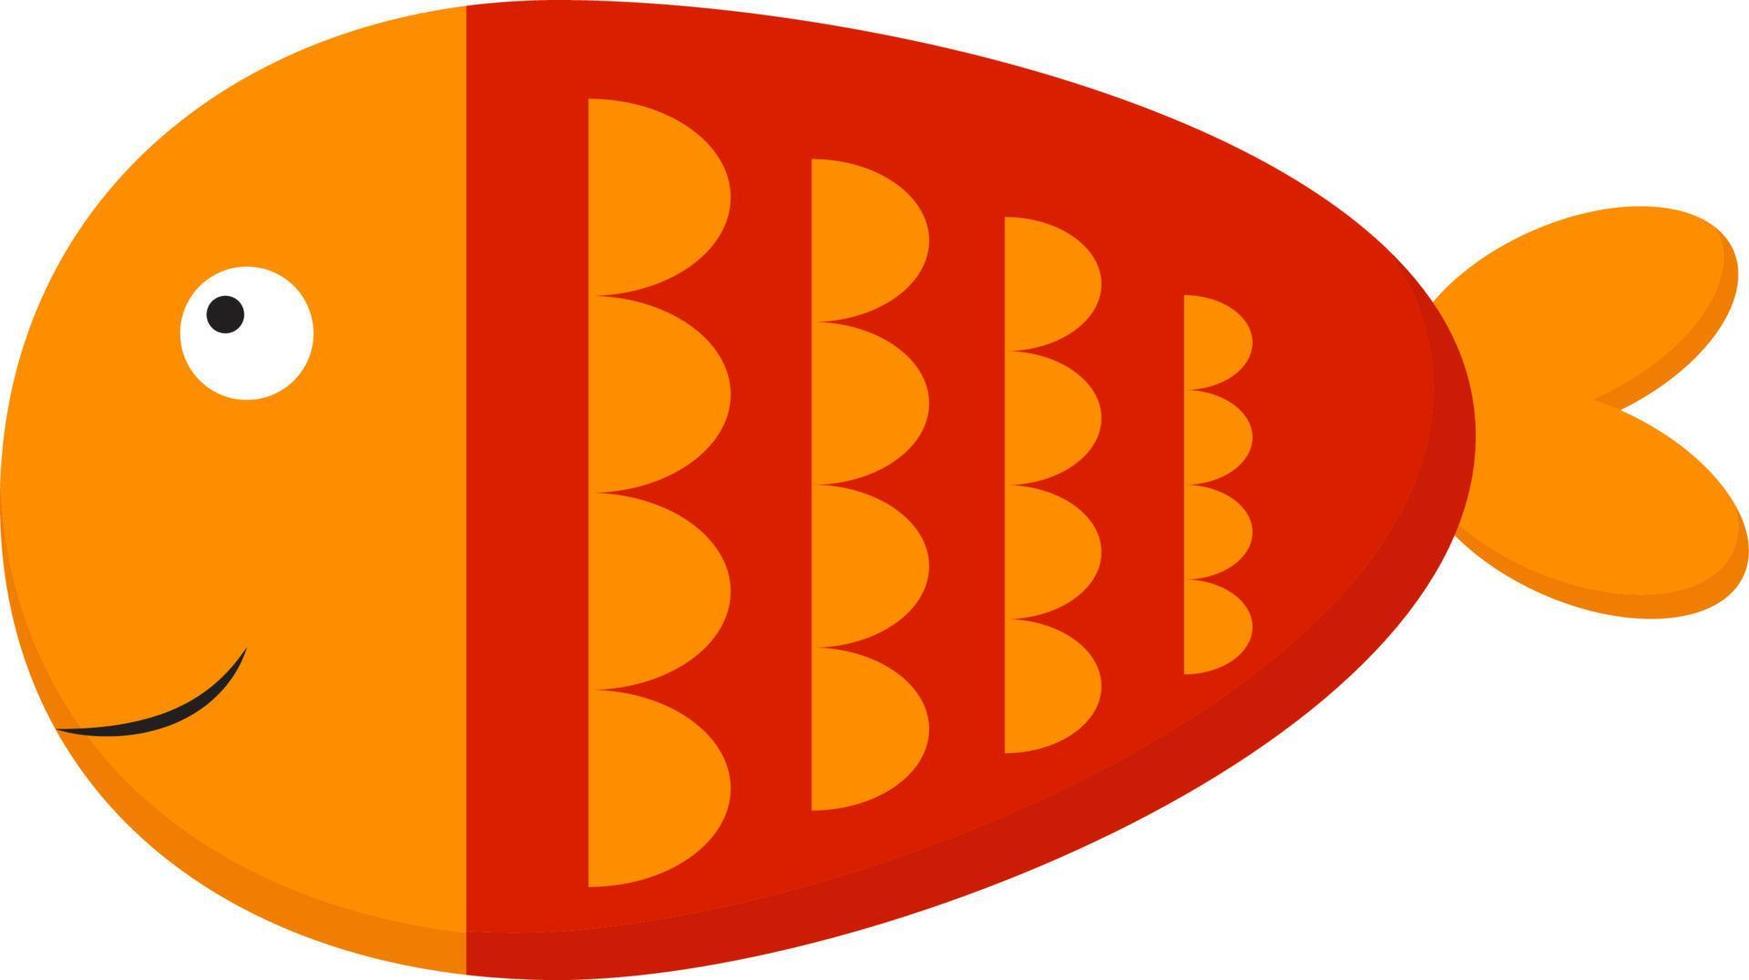 eine gelbe und orange fisch-, vektor- oder farbillustration. vektor